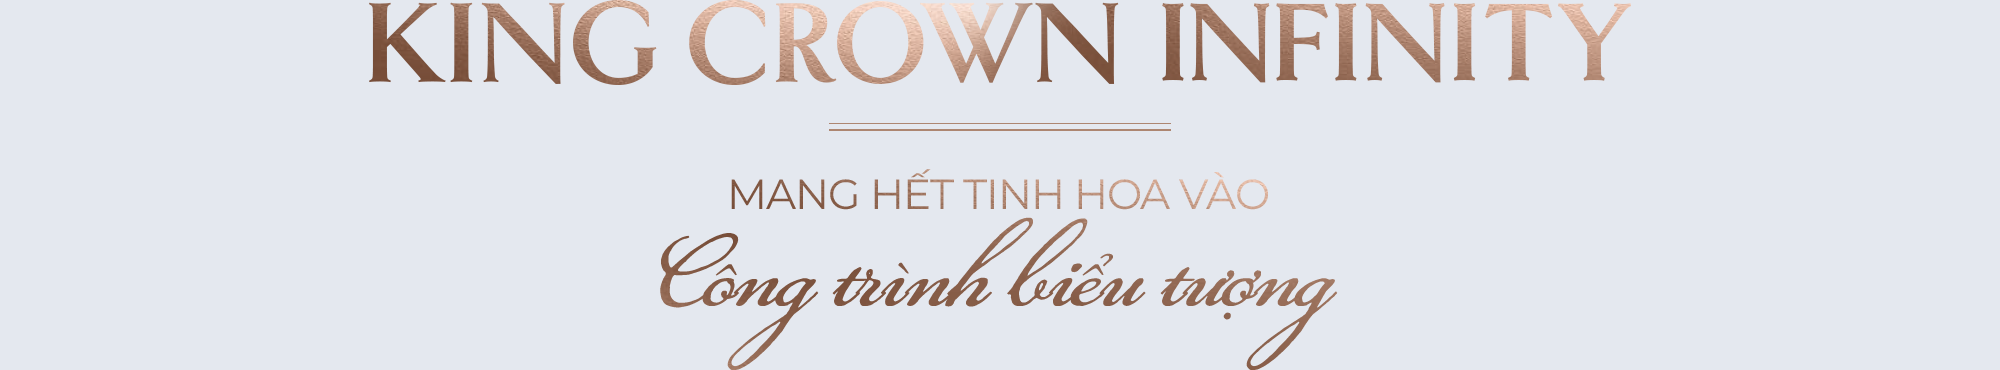 King Crown Infinity - Mang hết tinh hoa vào công trình biểu tượng - Ảnh 1.